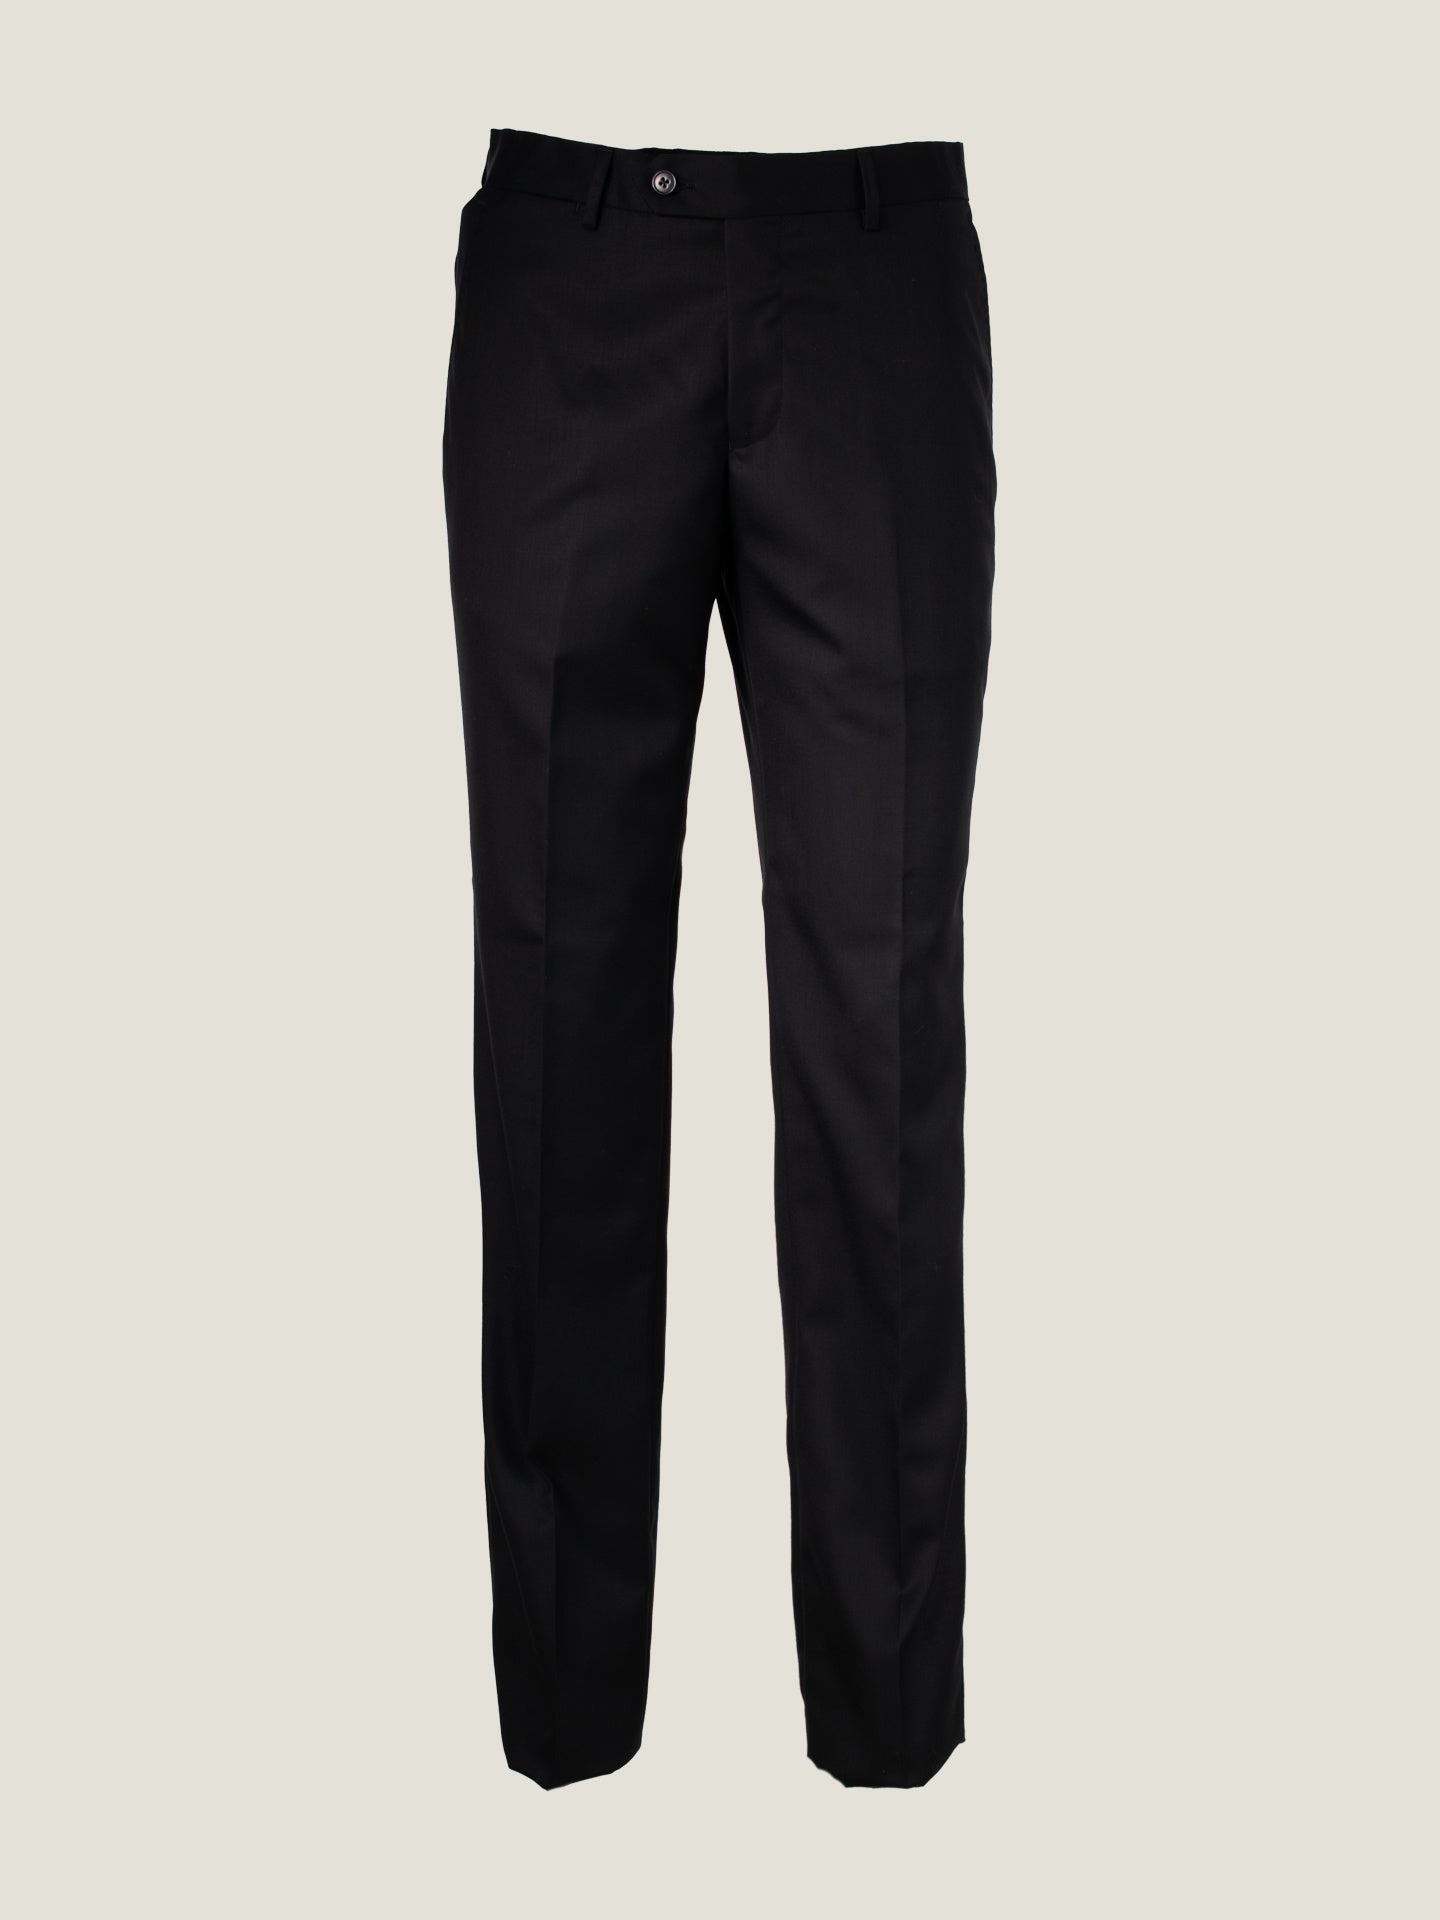 Essential Black Suit Trouser